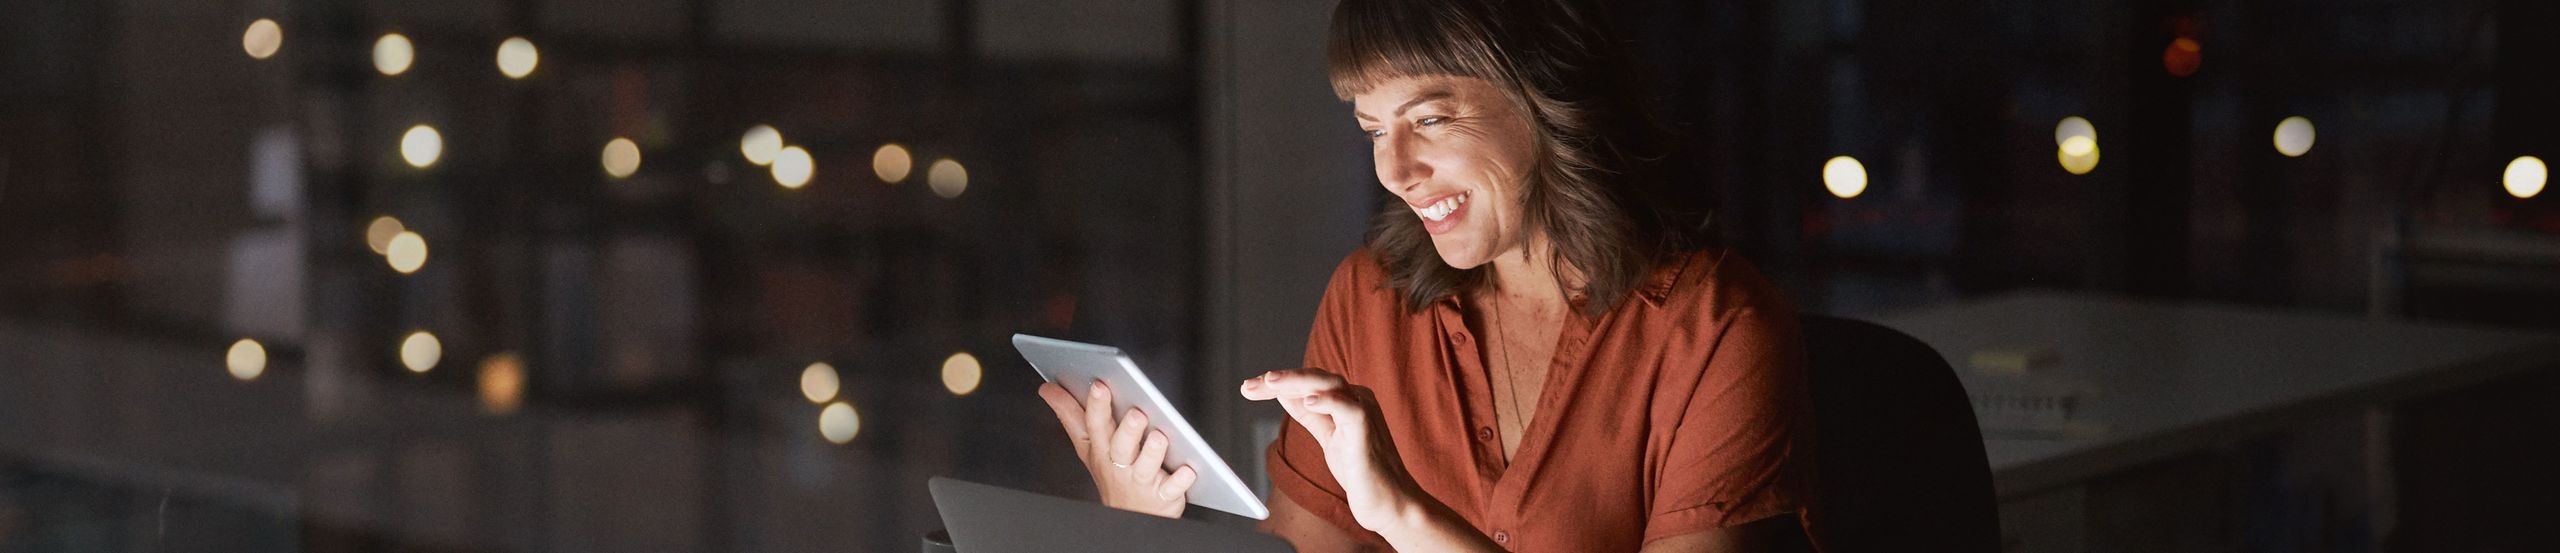 Frau sitzt im dunklen Büro und guckt lächelnd auf ein Tablet, das zusammen mit dem Notebook-Display die Szene beleuchtet